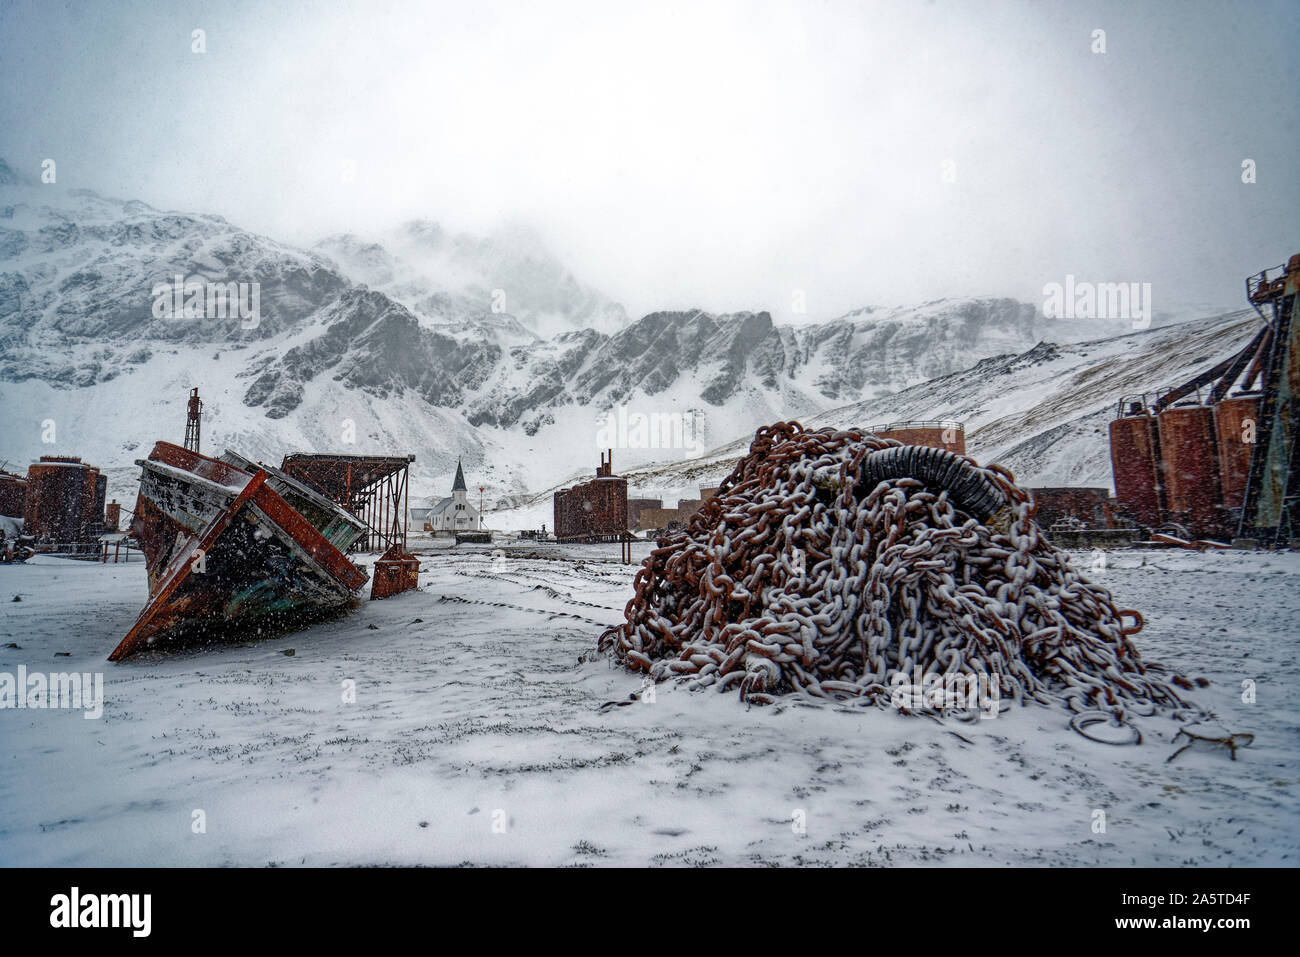 Grytviken, eine verlassene Walfangstation, verschneite Landschaft, während Schnee fällt, Südgeorgien, Antarktis Stockfoto